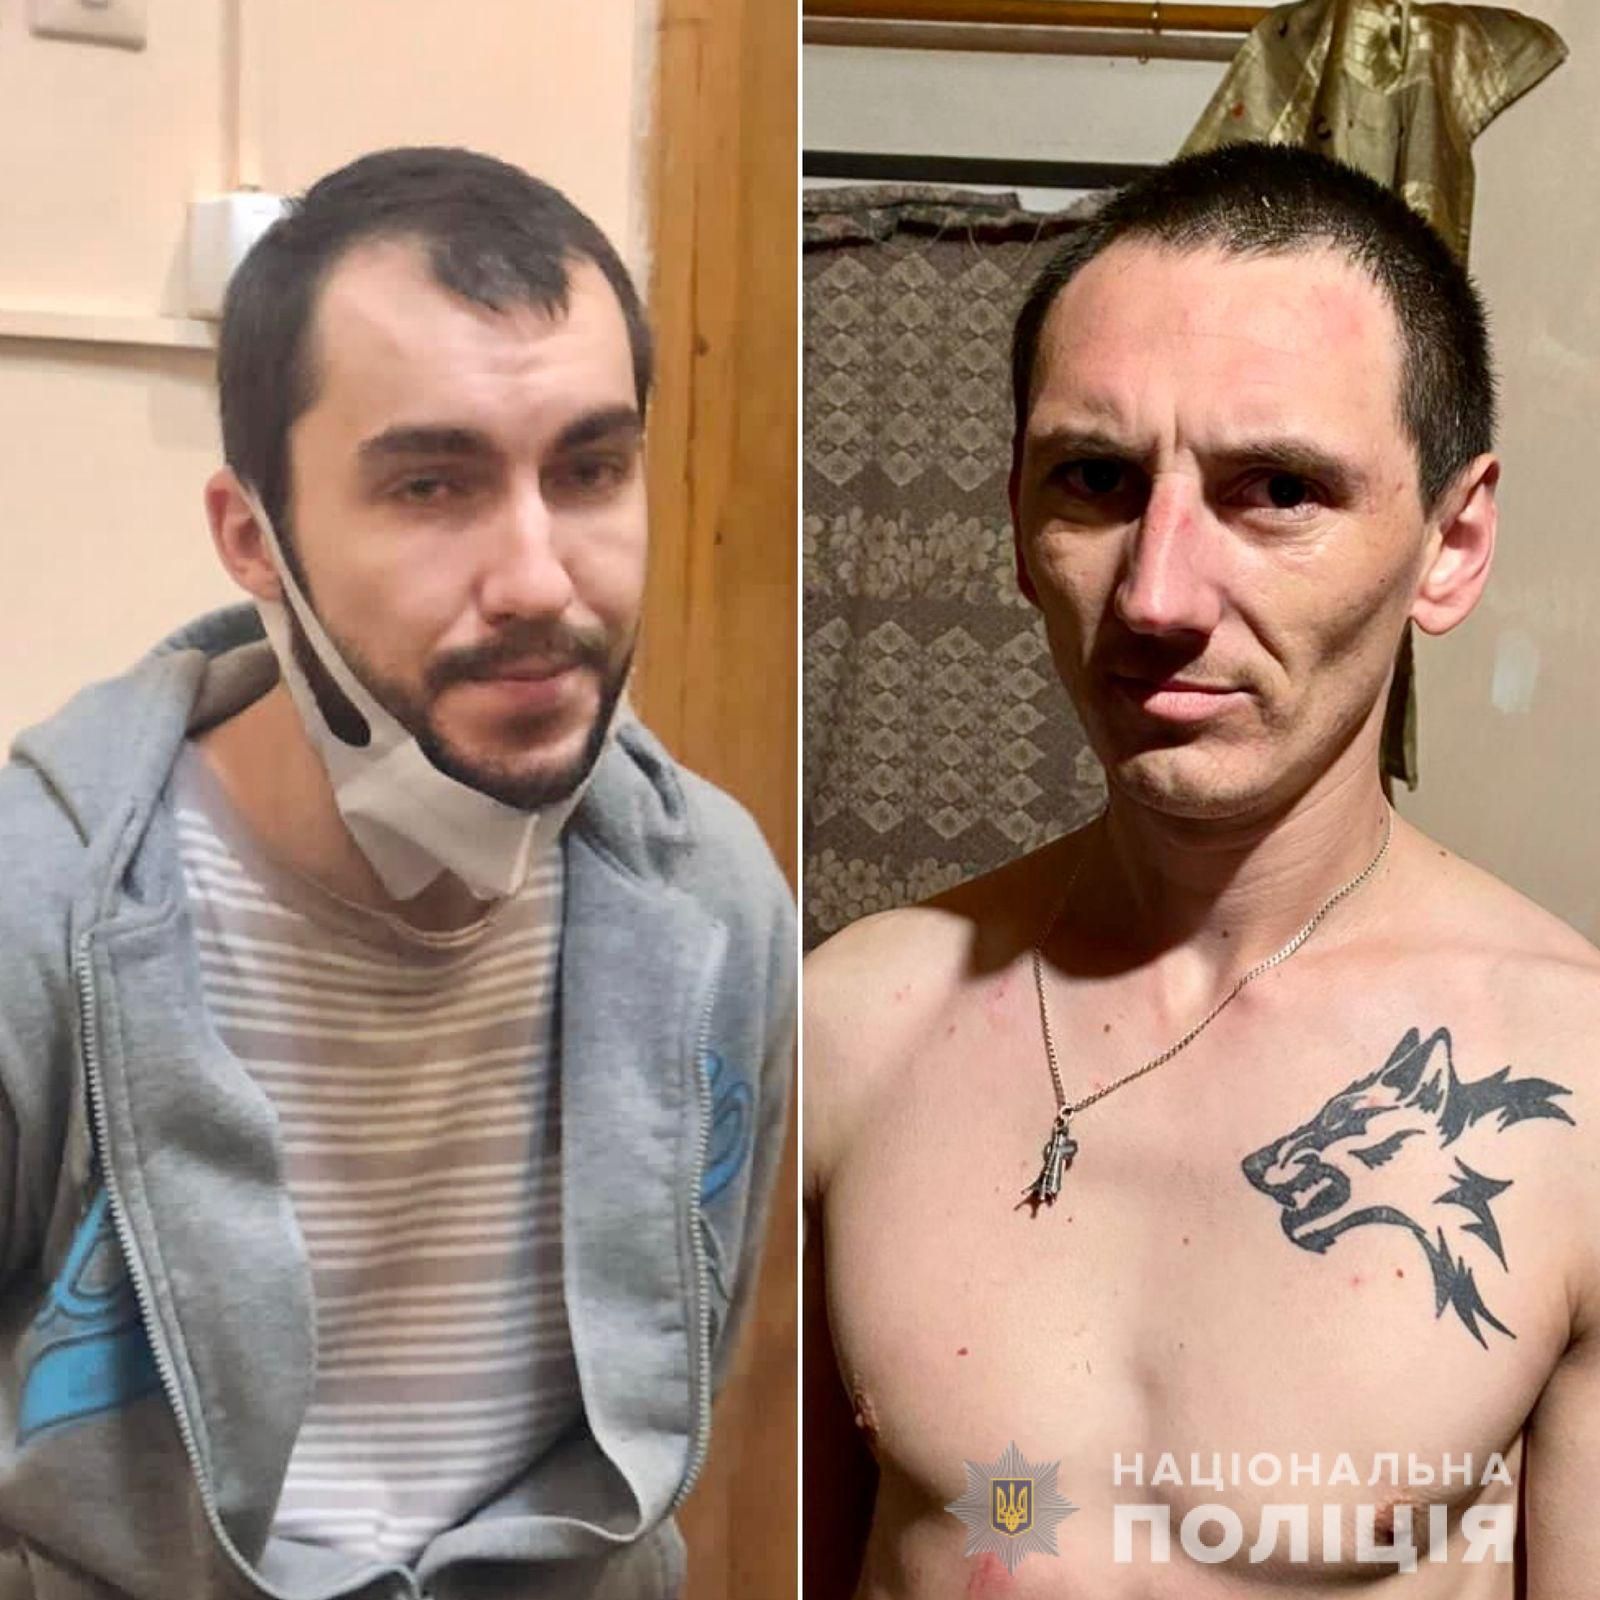 Напали на охорону: двоє в'язнів втекли з СІЗО на Закарпатті - Кримінальні новини України - 24 Канал